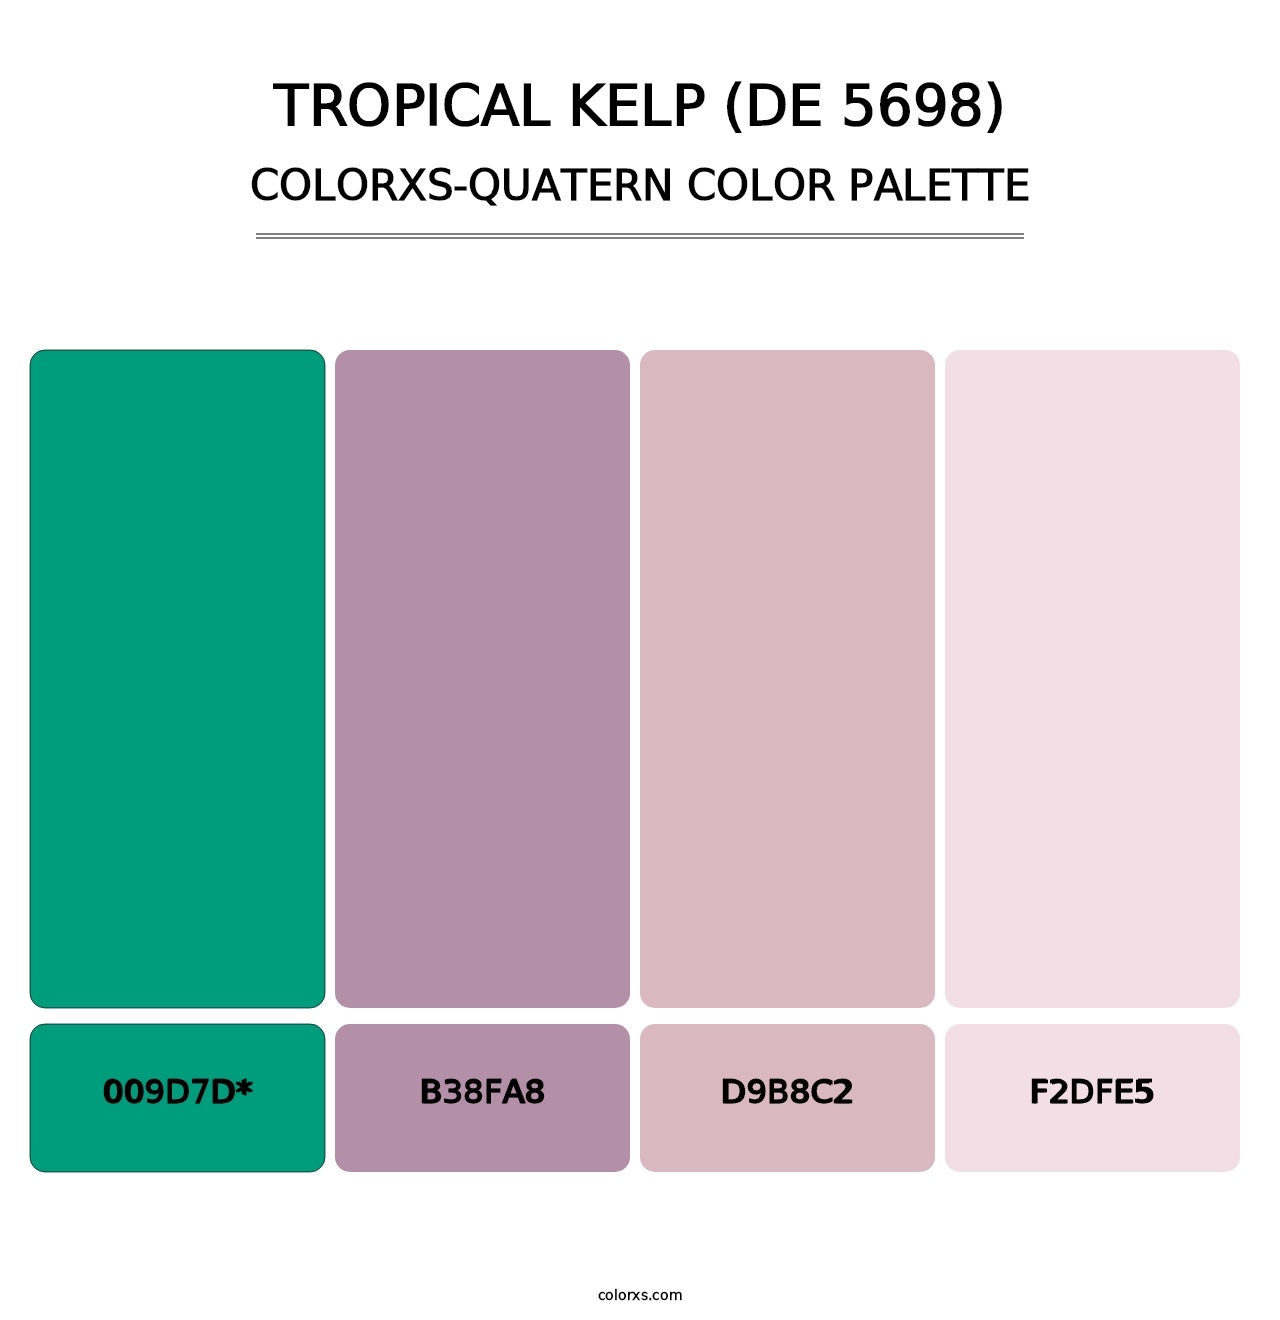 Tropical Kelp (DE 5698) - Colorxs Quatern Palette